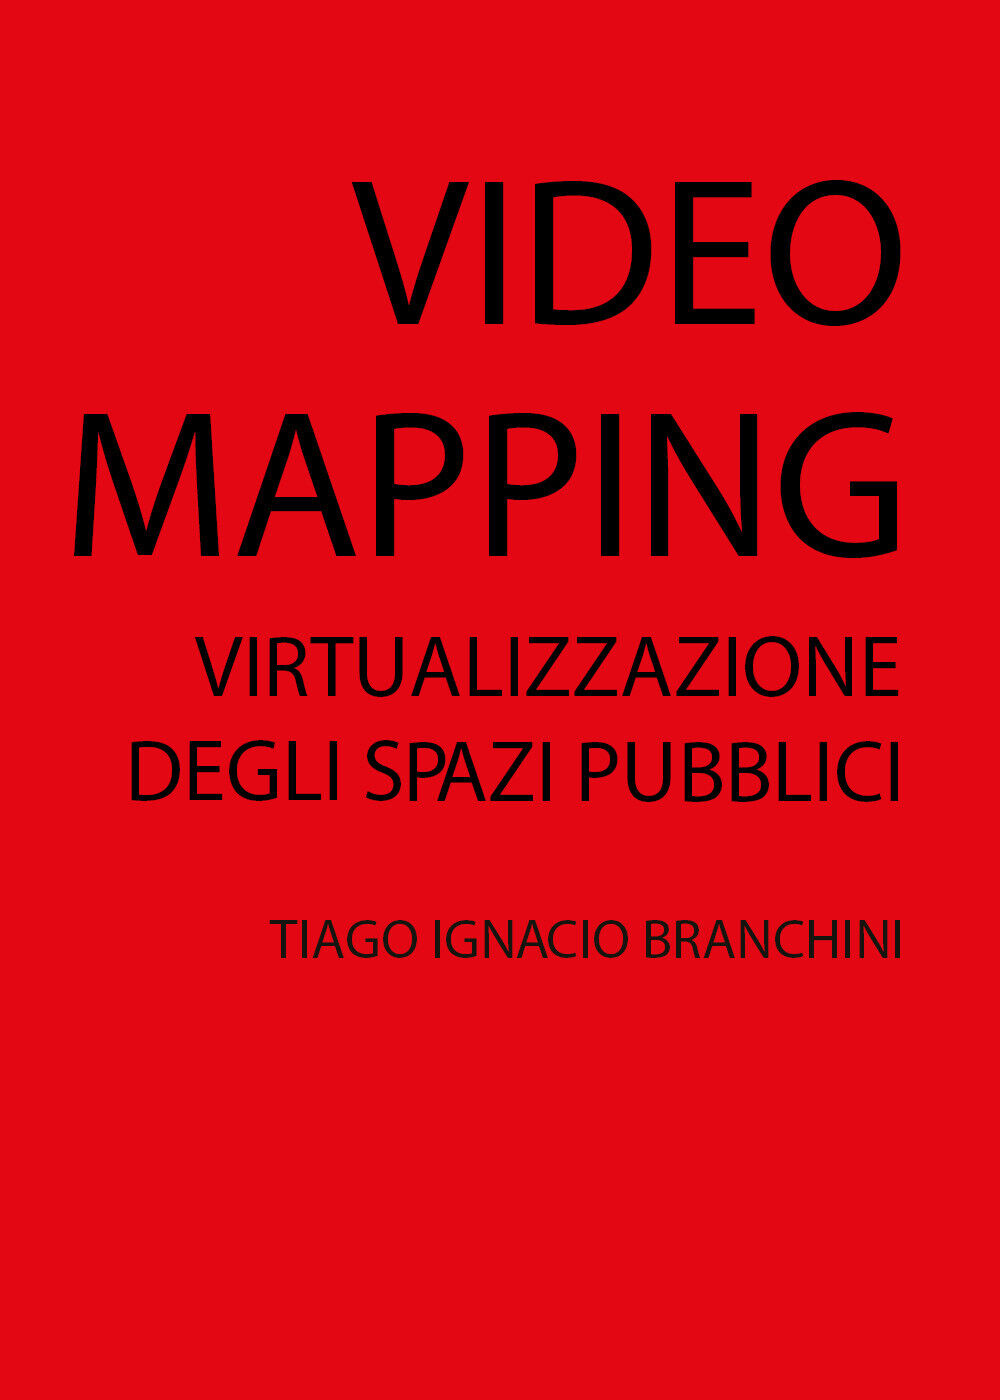 VIDEO MAPPING: virtualizzazione degli spazi pubblici, di Tiago Ignacio Branchini